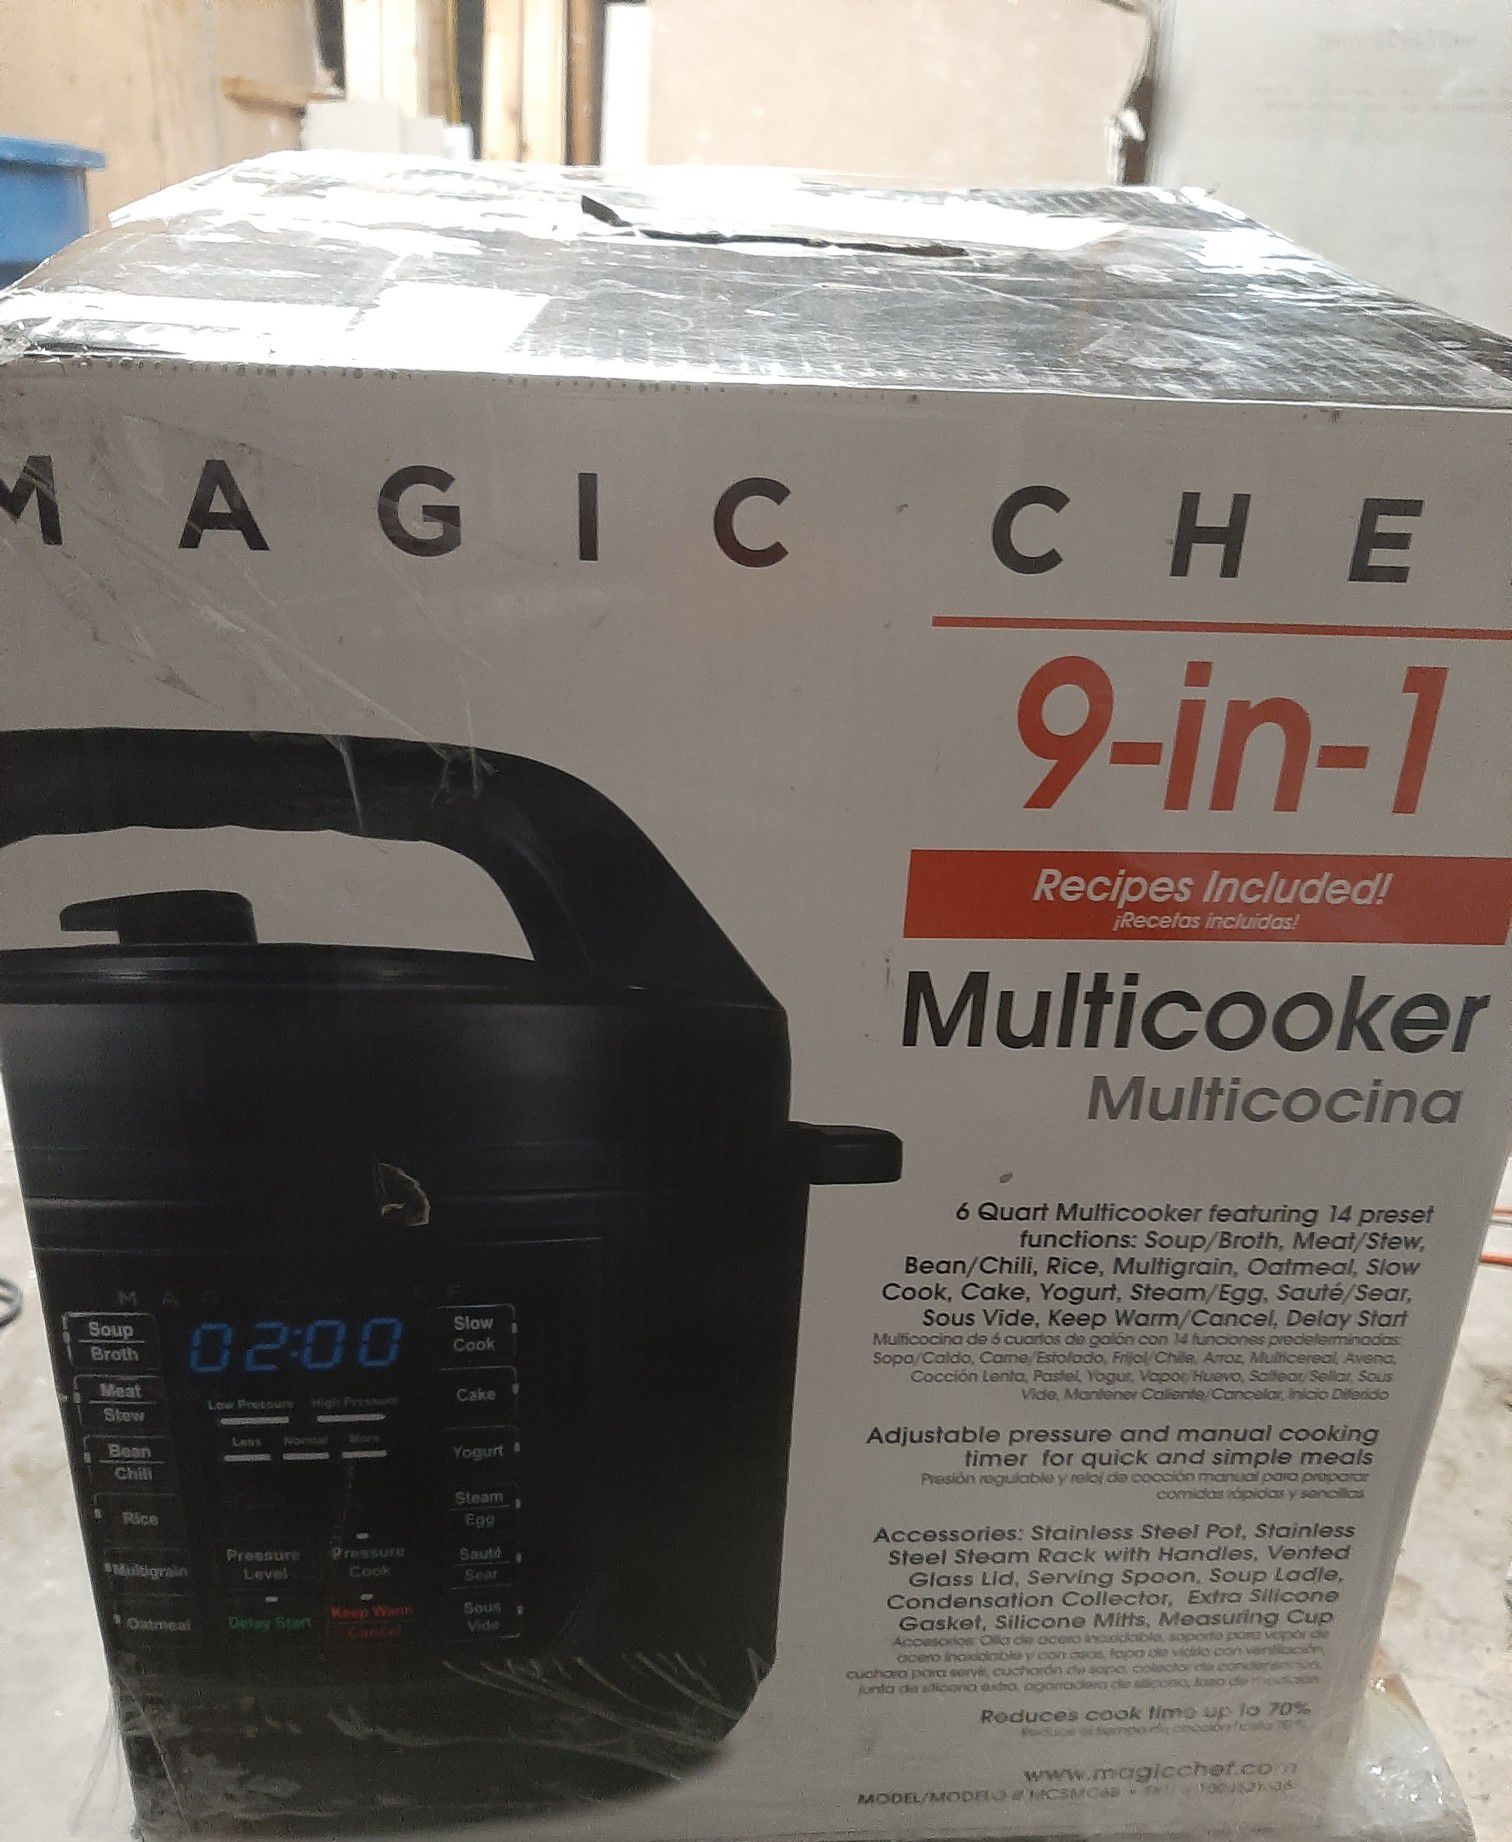 Magic Chef multicooker